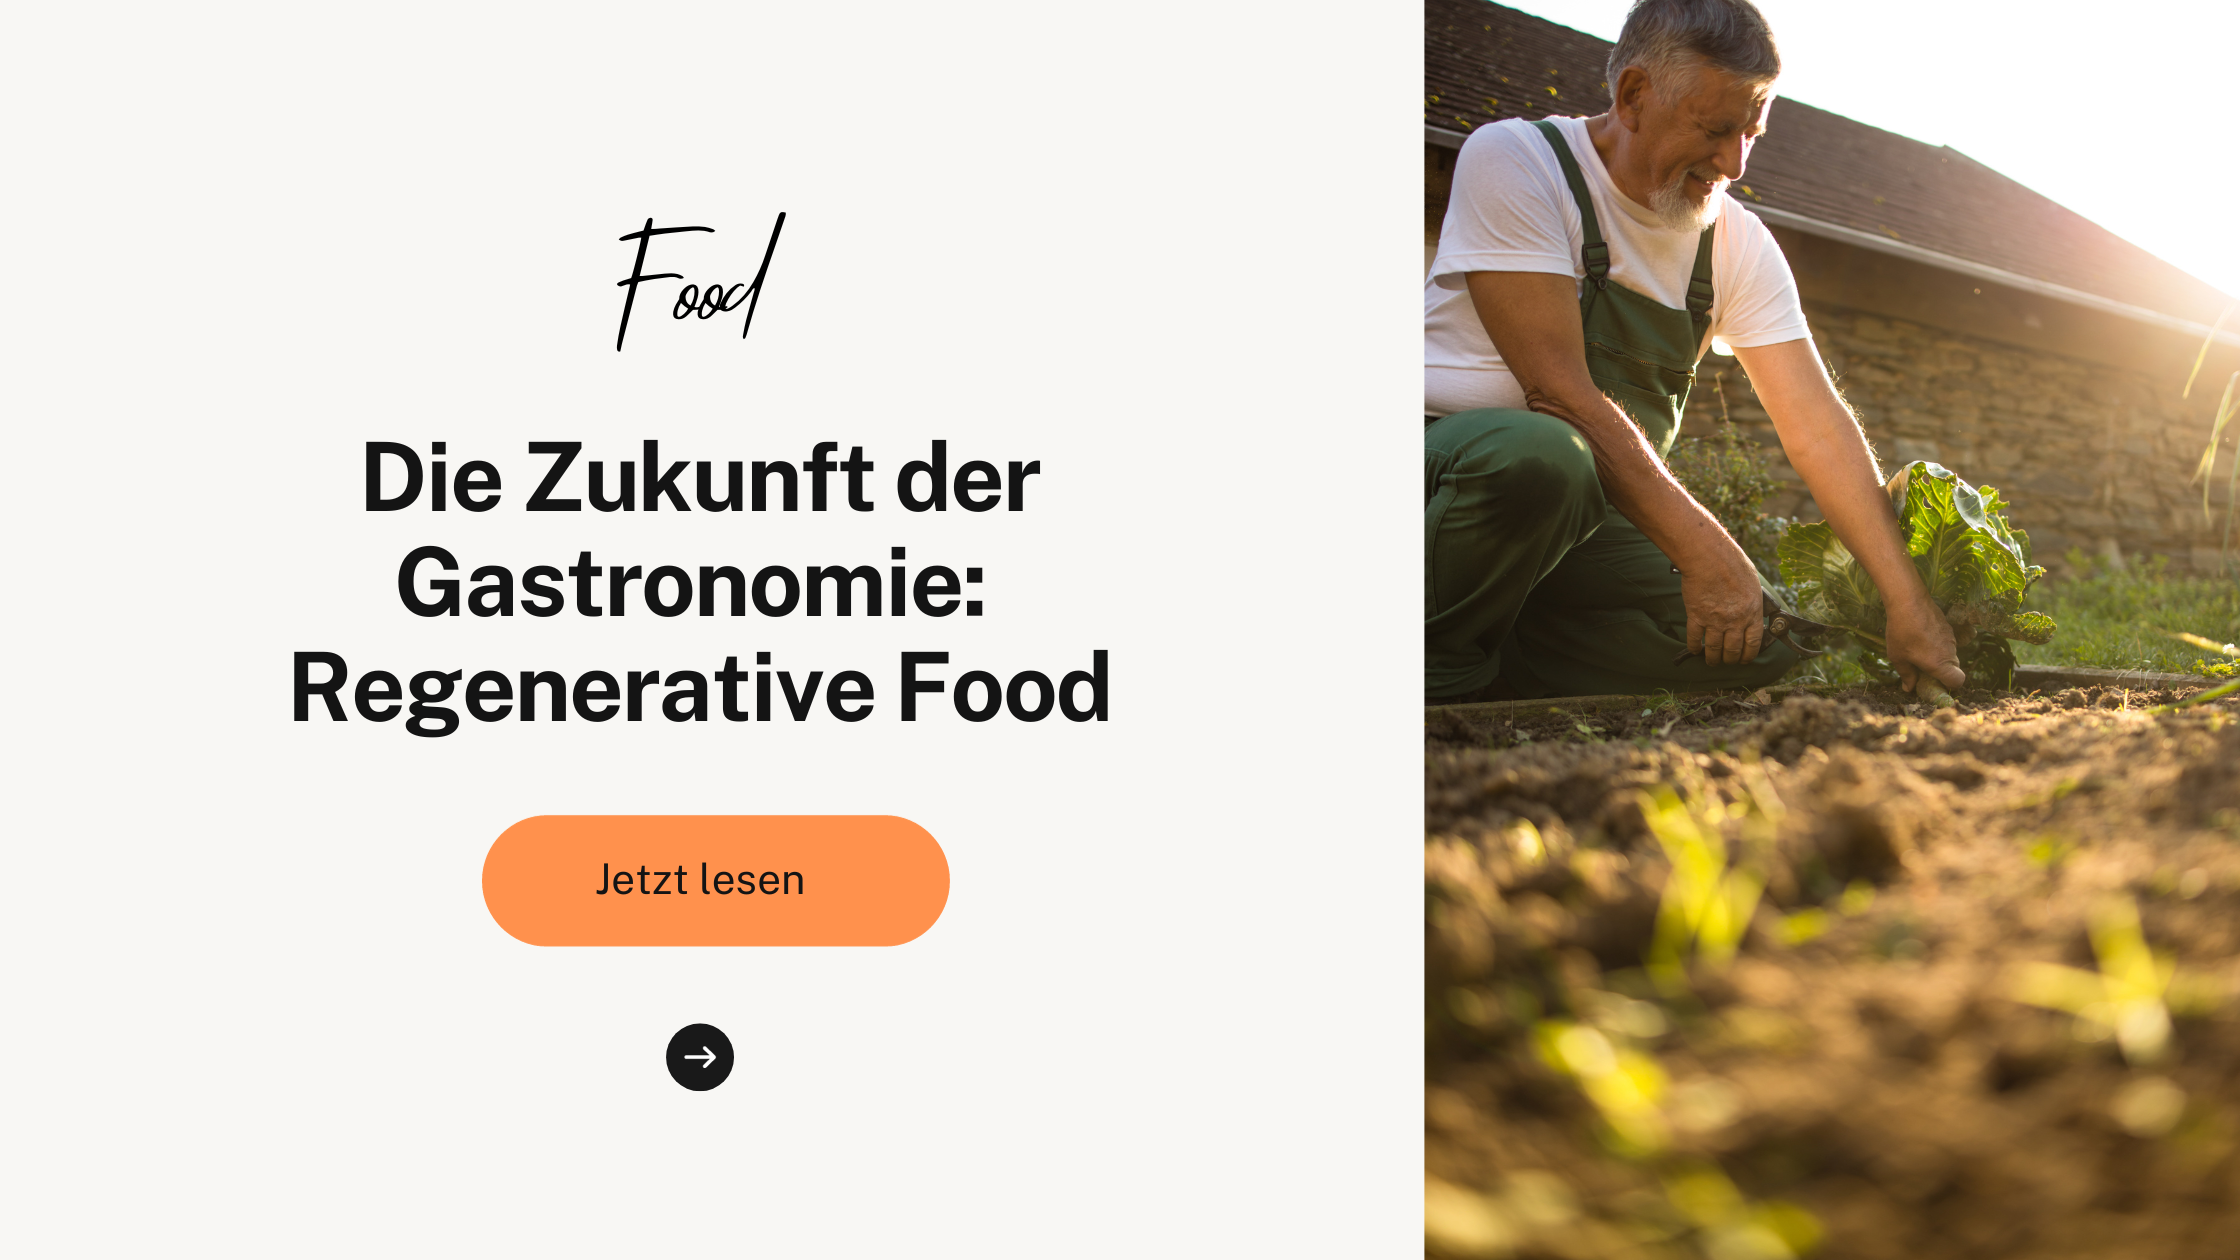 Die Zukunft der Gastronomie: Regenerative Food